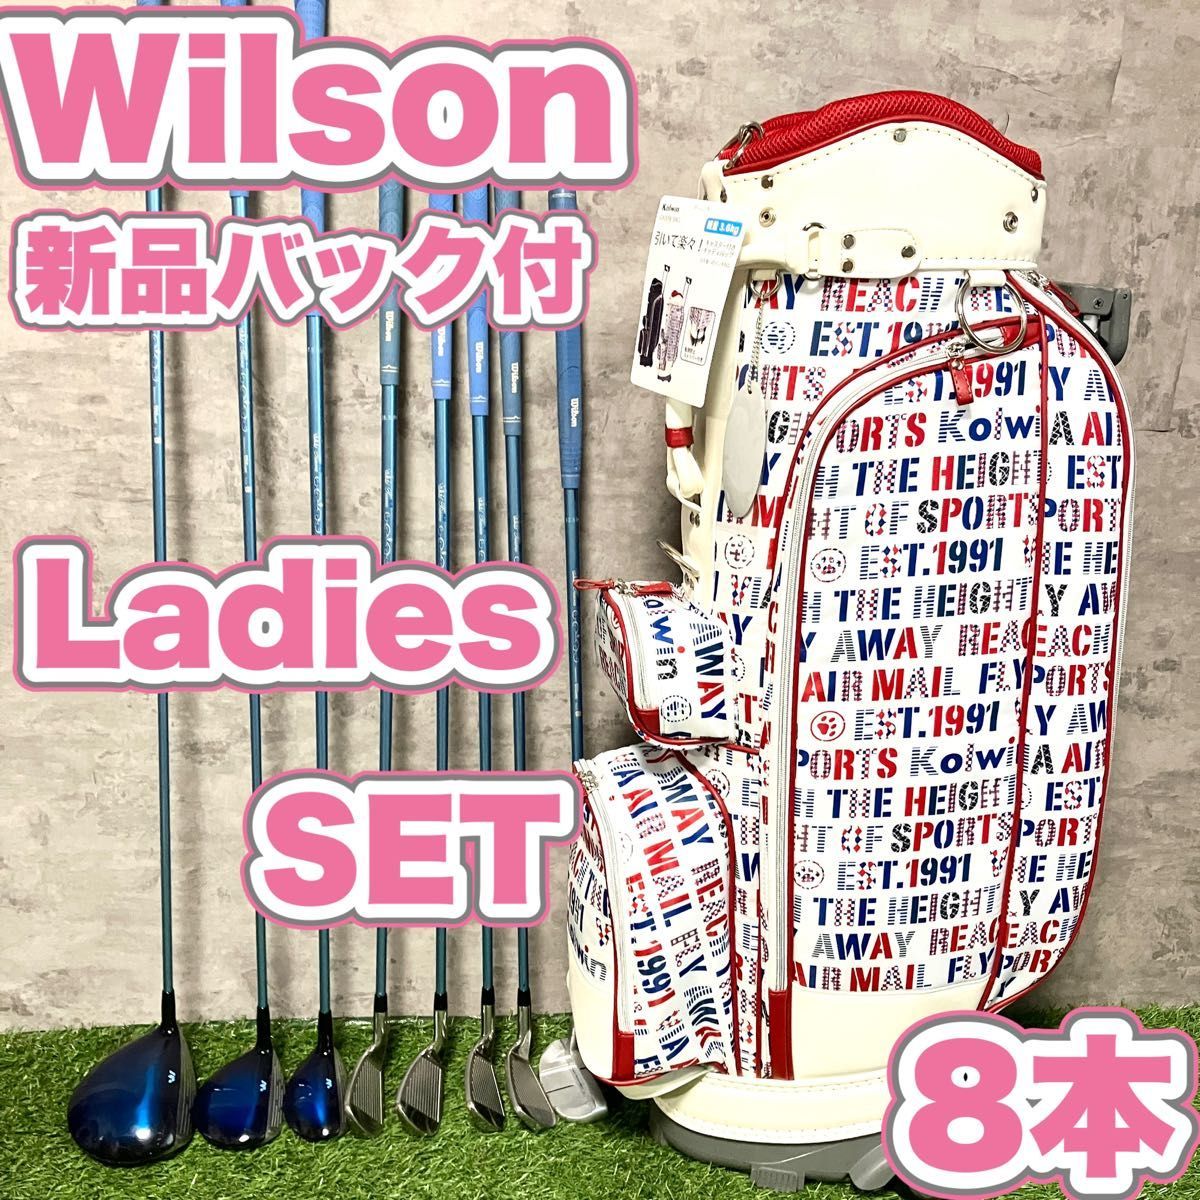 Wilson ウィルソン レディース ゴルフセット 初心者 簡単 新品バック付き-